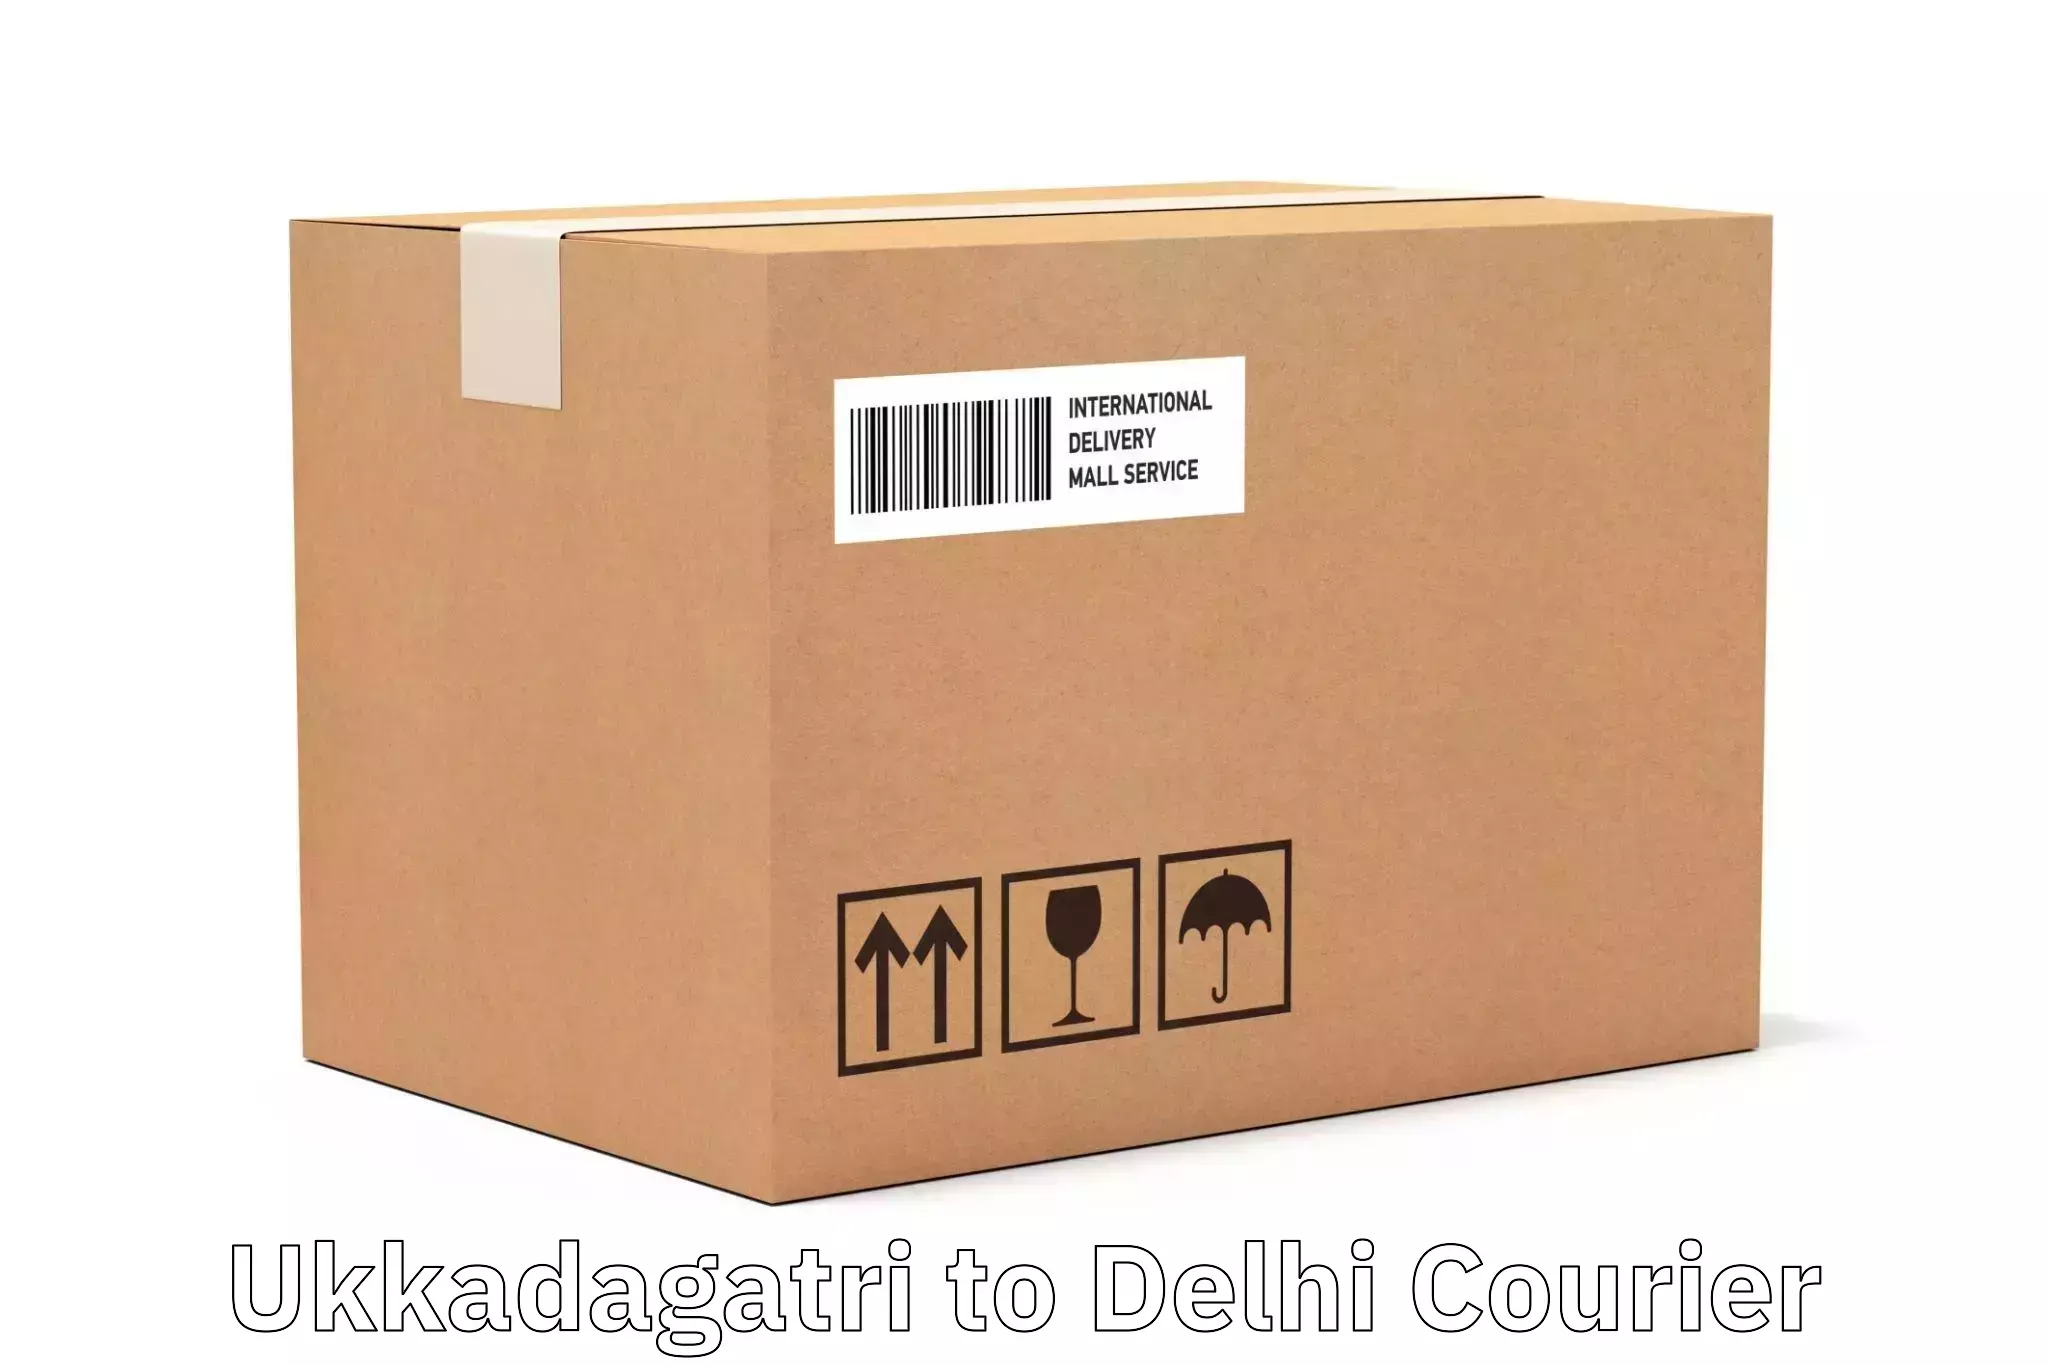 Next-generation courier services Ukkadagatri to Delhi